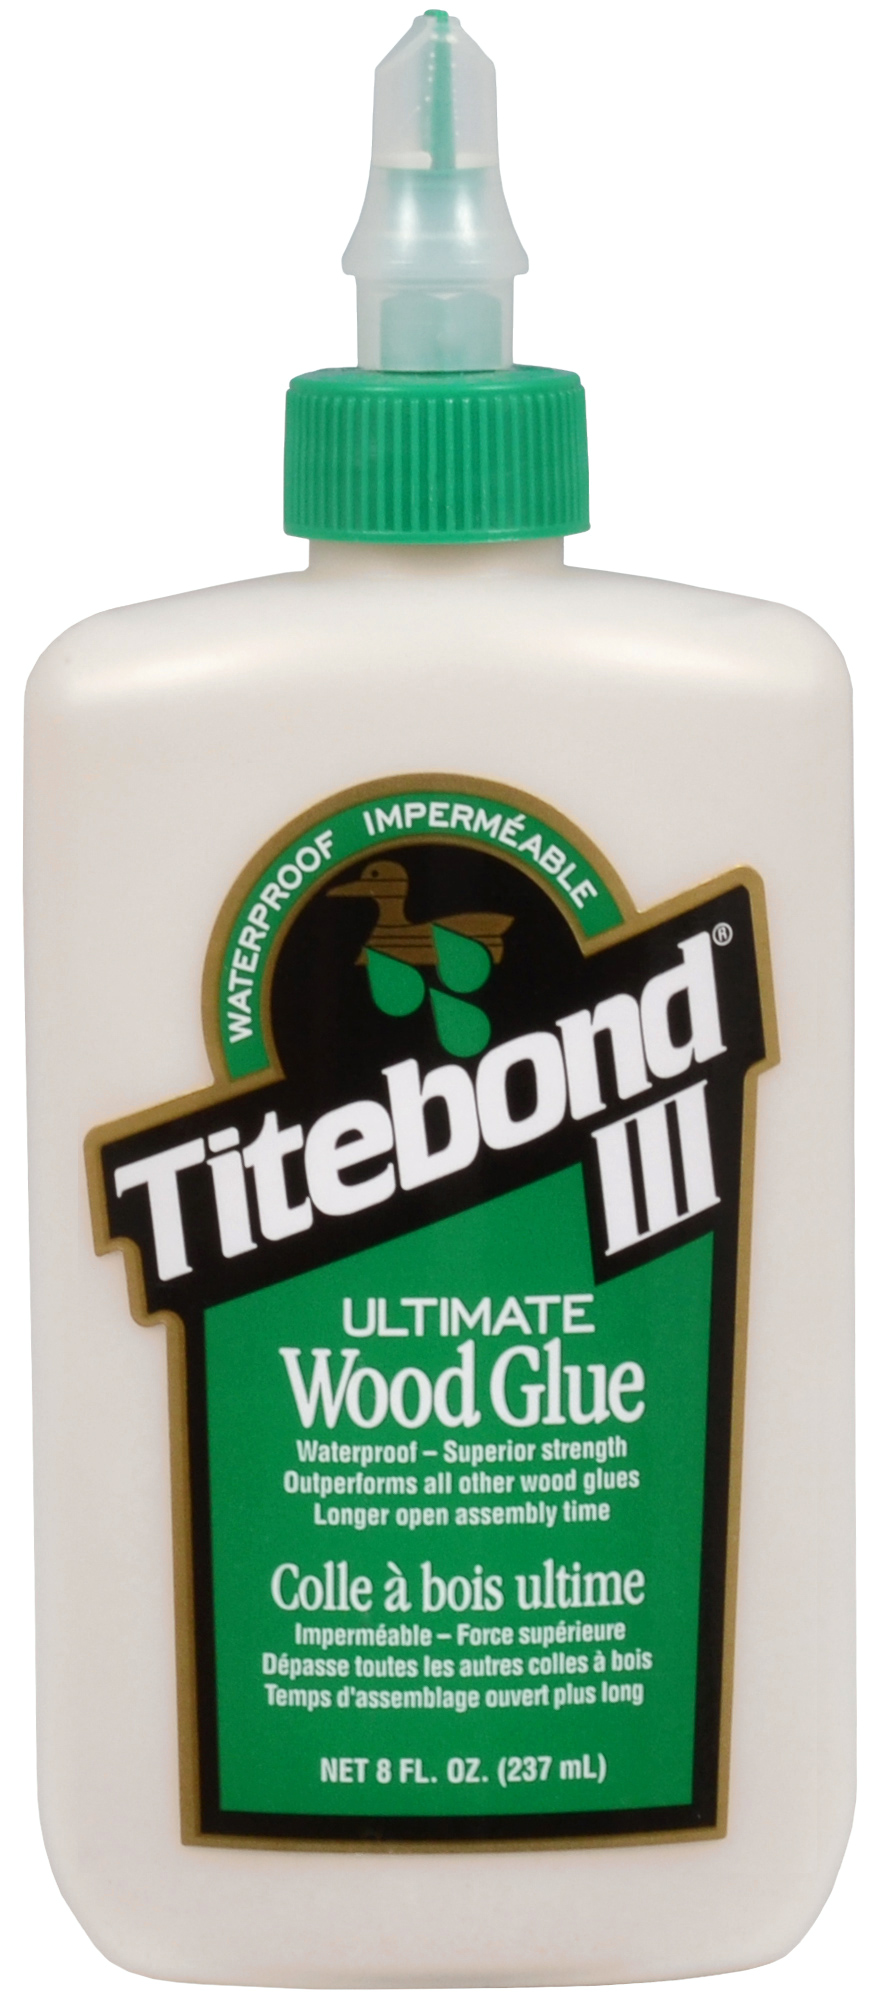 Titebond 3, la référence colle à bois de chez Titebond